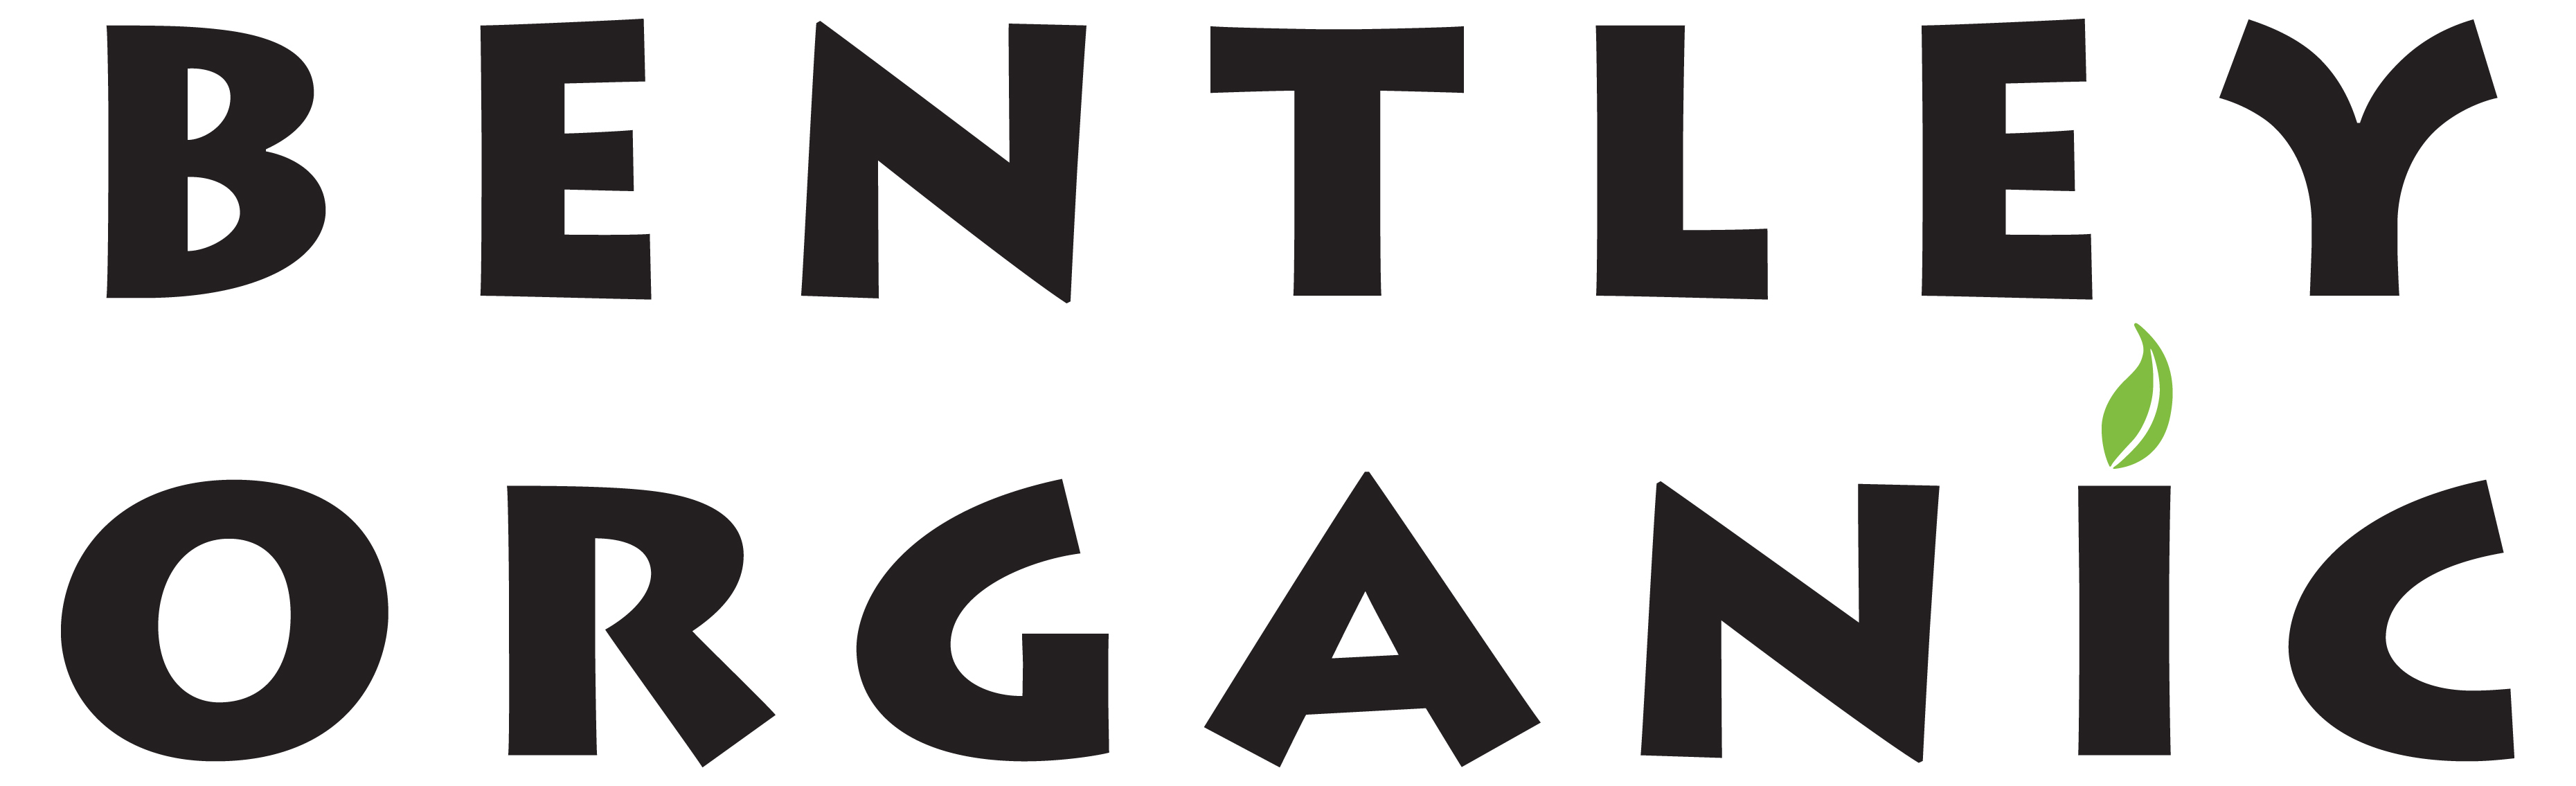 bentley_organic_logo